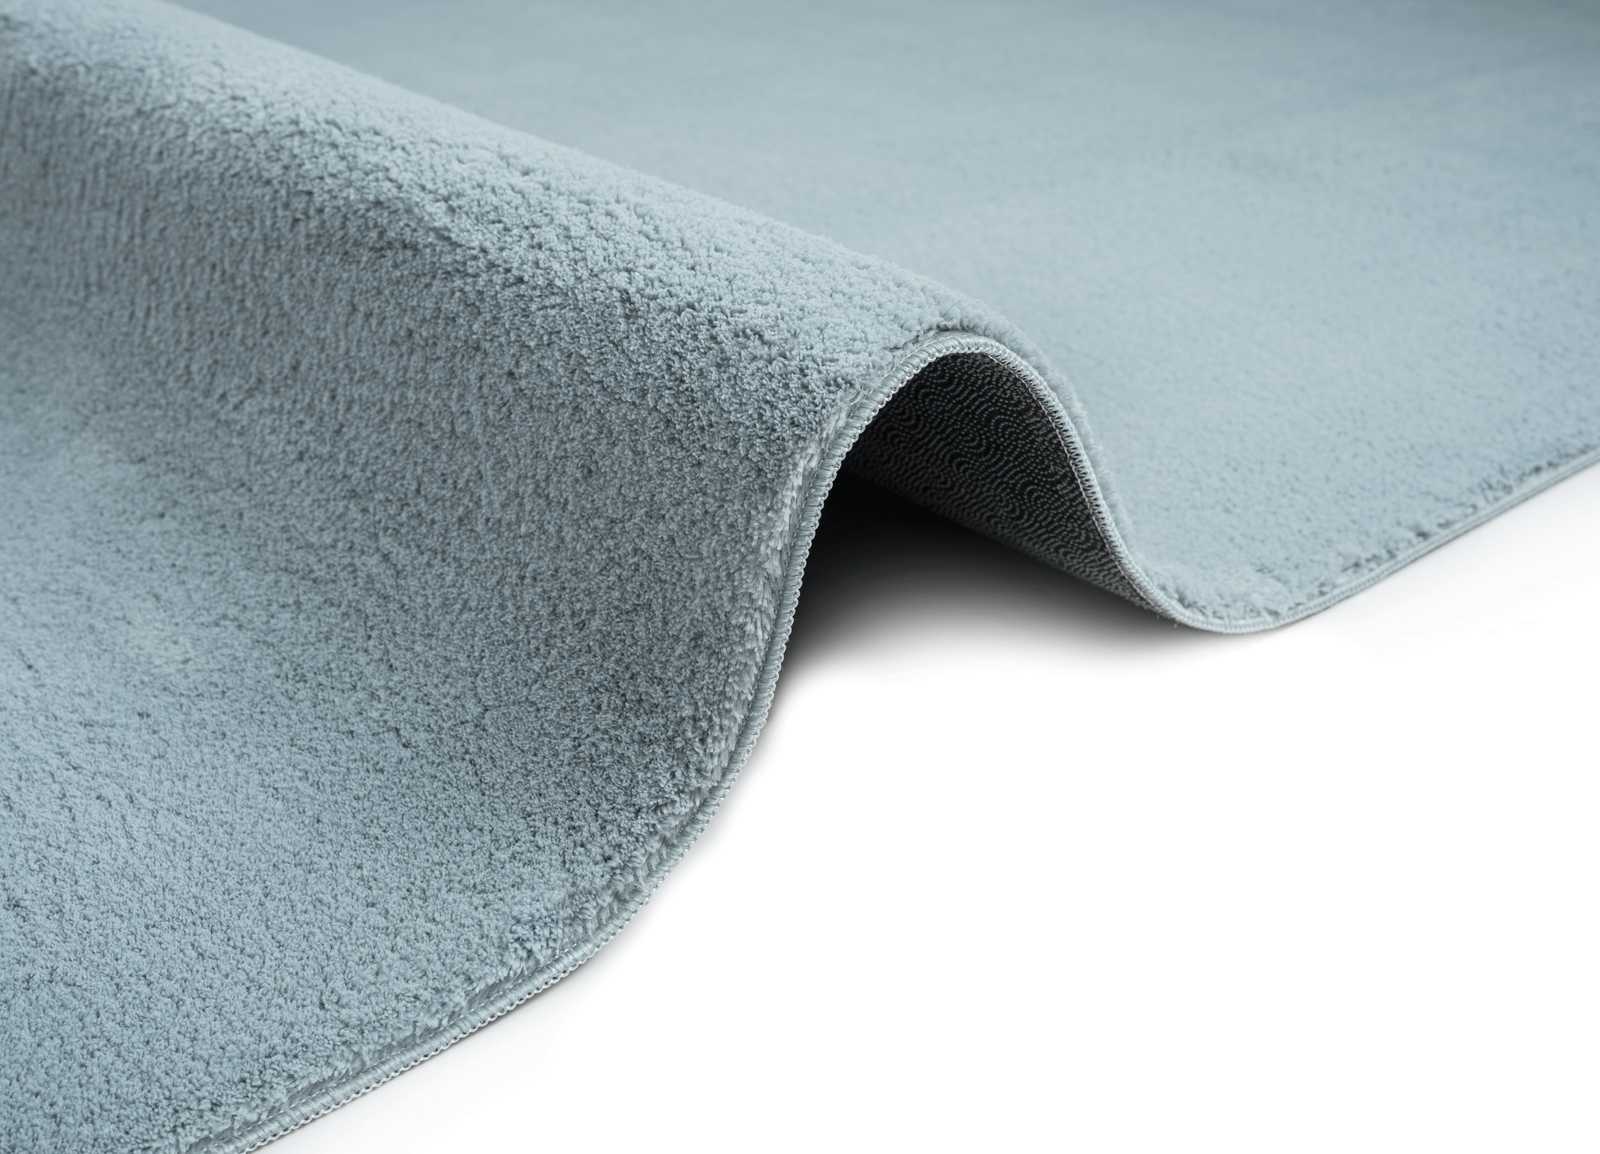             Fluffy high pile carpet in blue - 110 x 60 cm
        